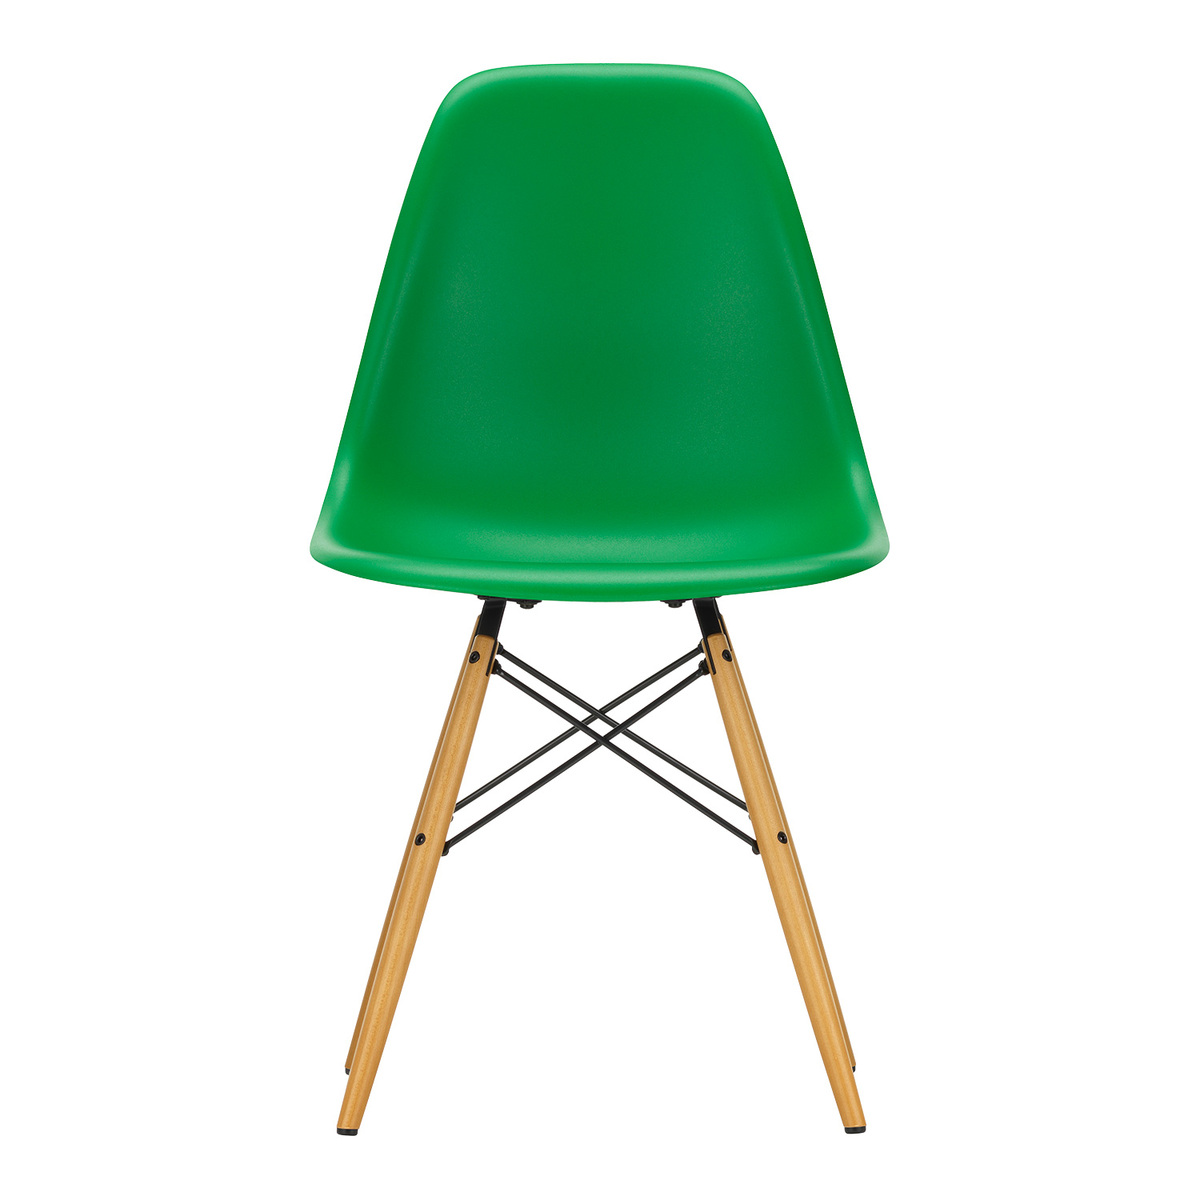 Vitra Eames DSW tuoli, green - vaahtera